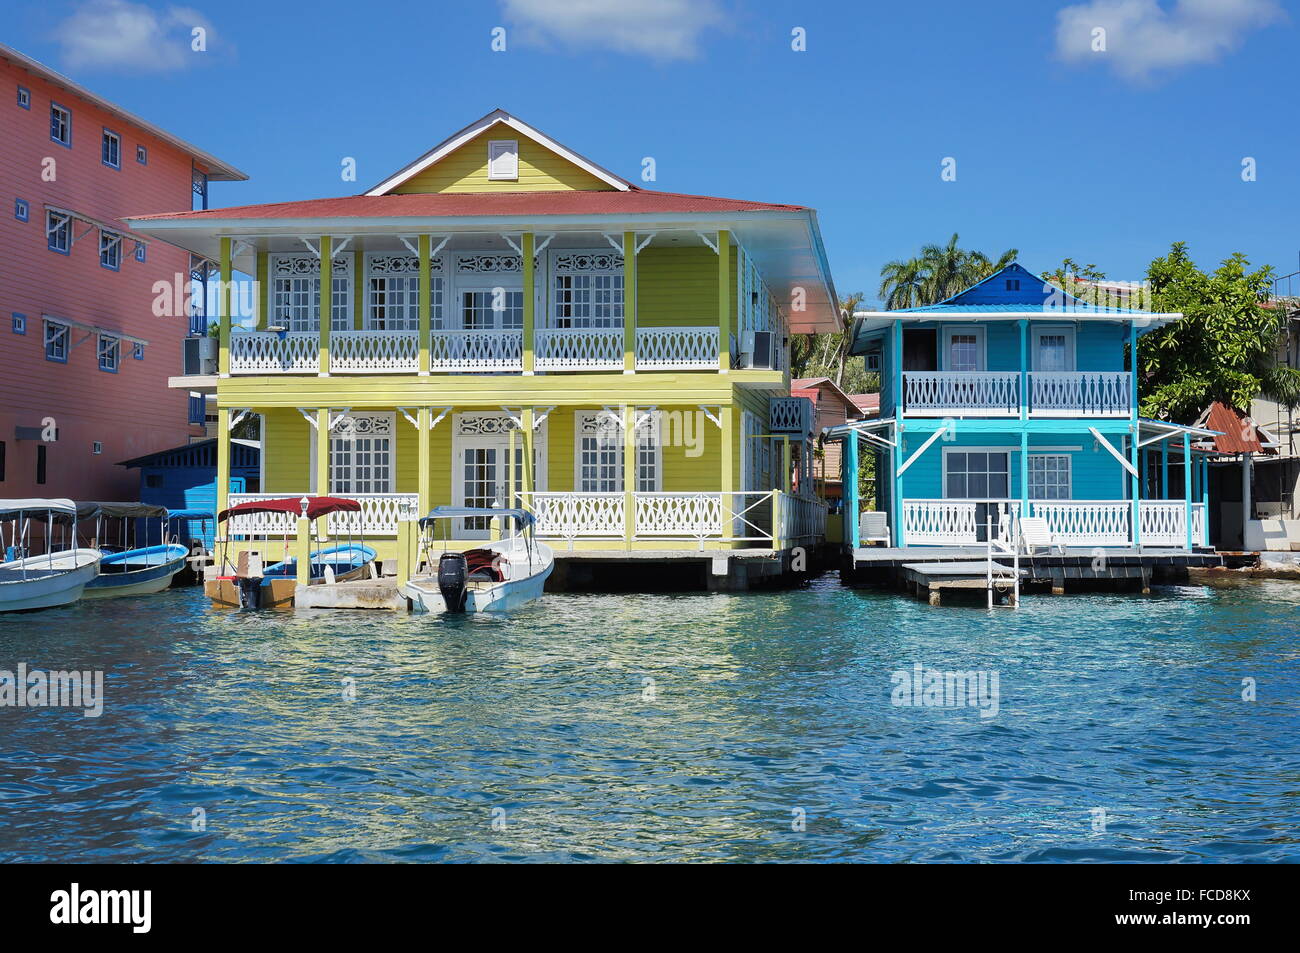 Tipica dei Caraibi case coloniali oltre l'acqua con imbarcazioni al dock, Panama, America Centrale Foto Stock